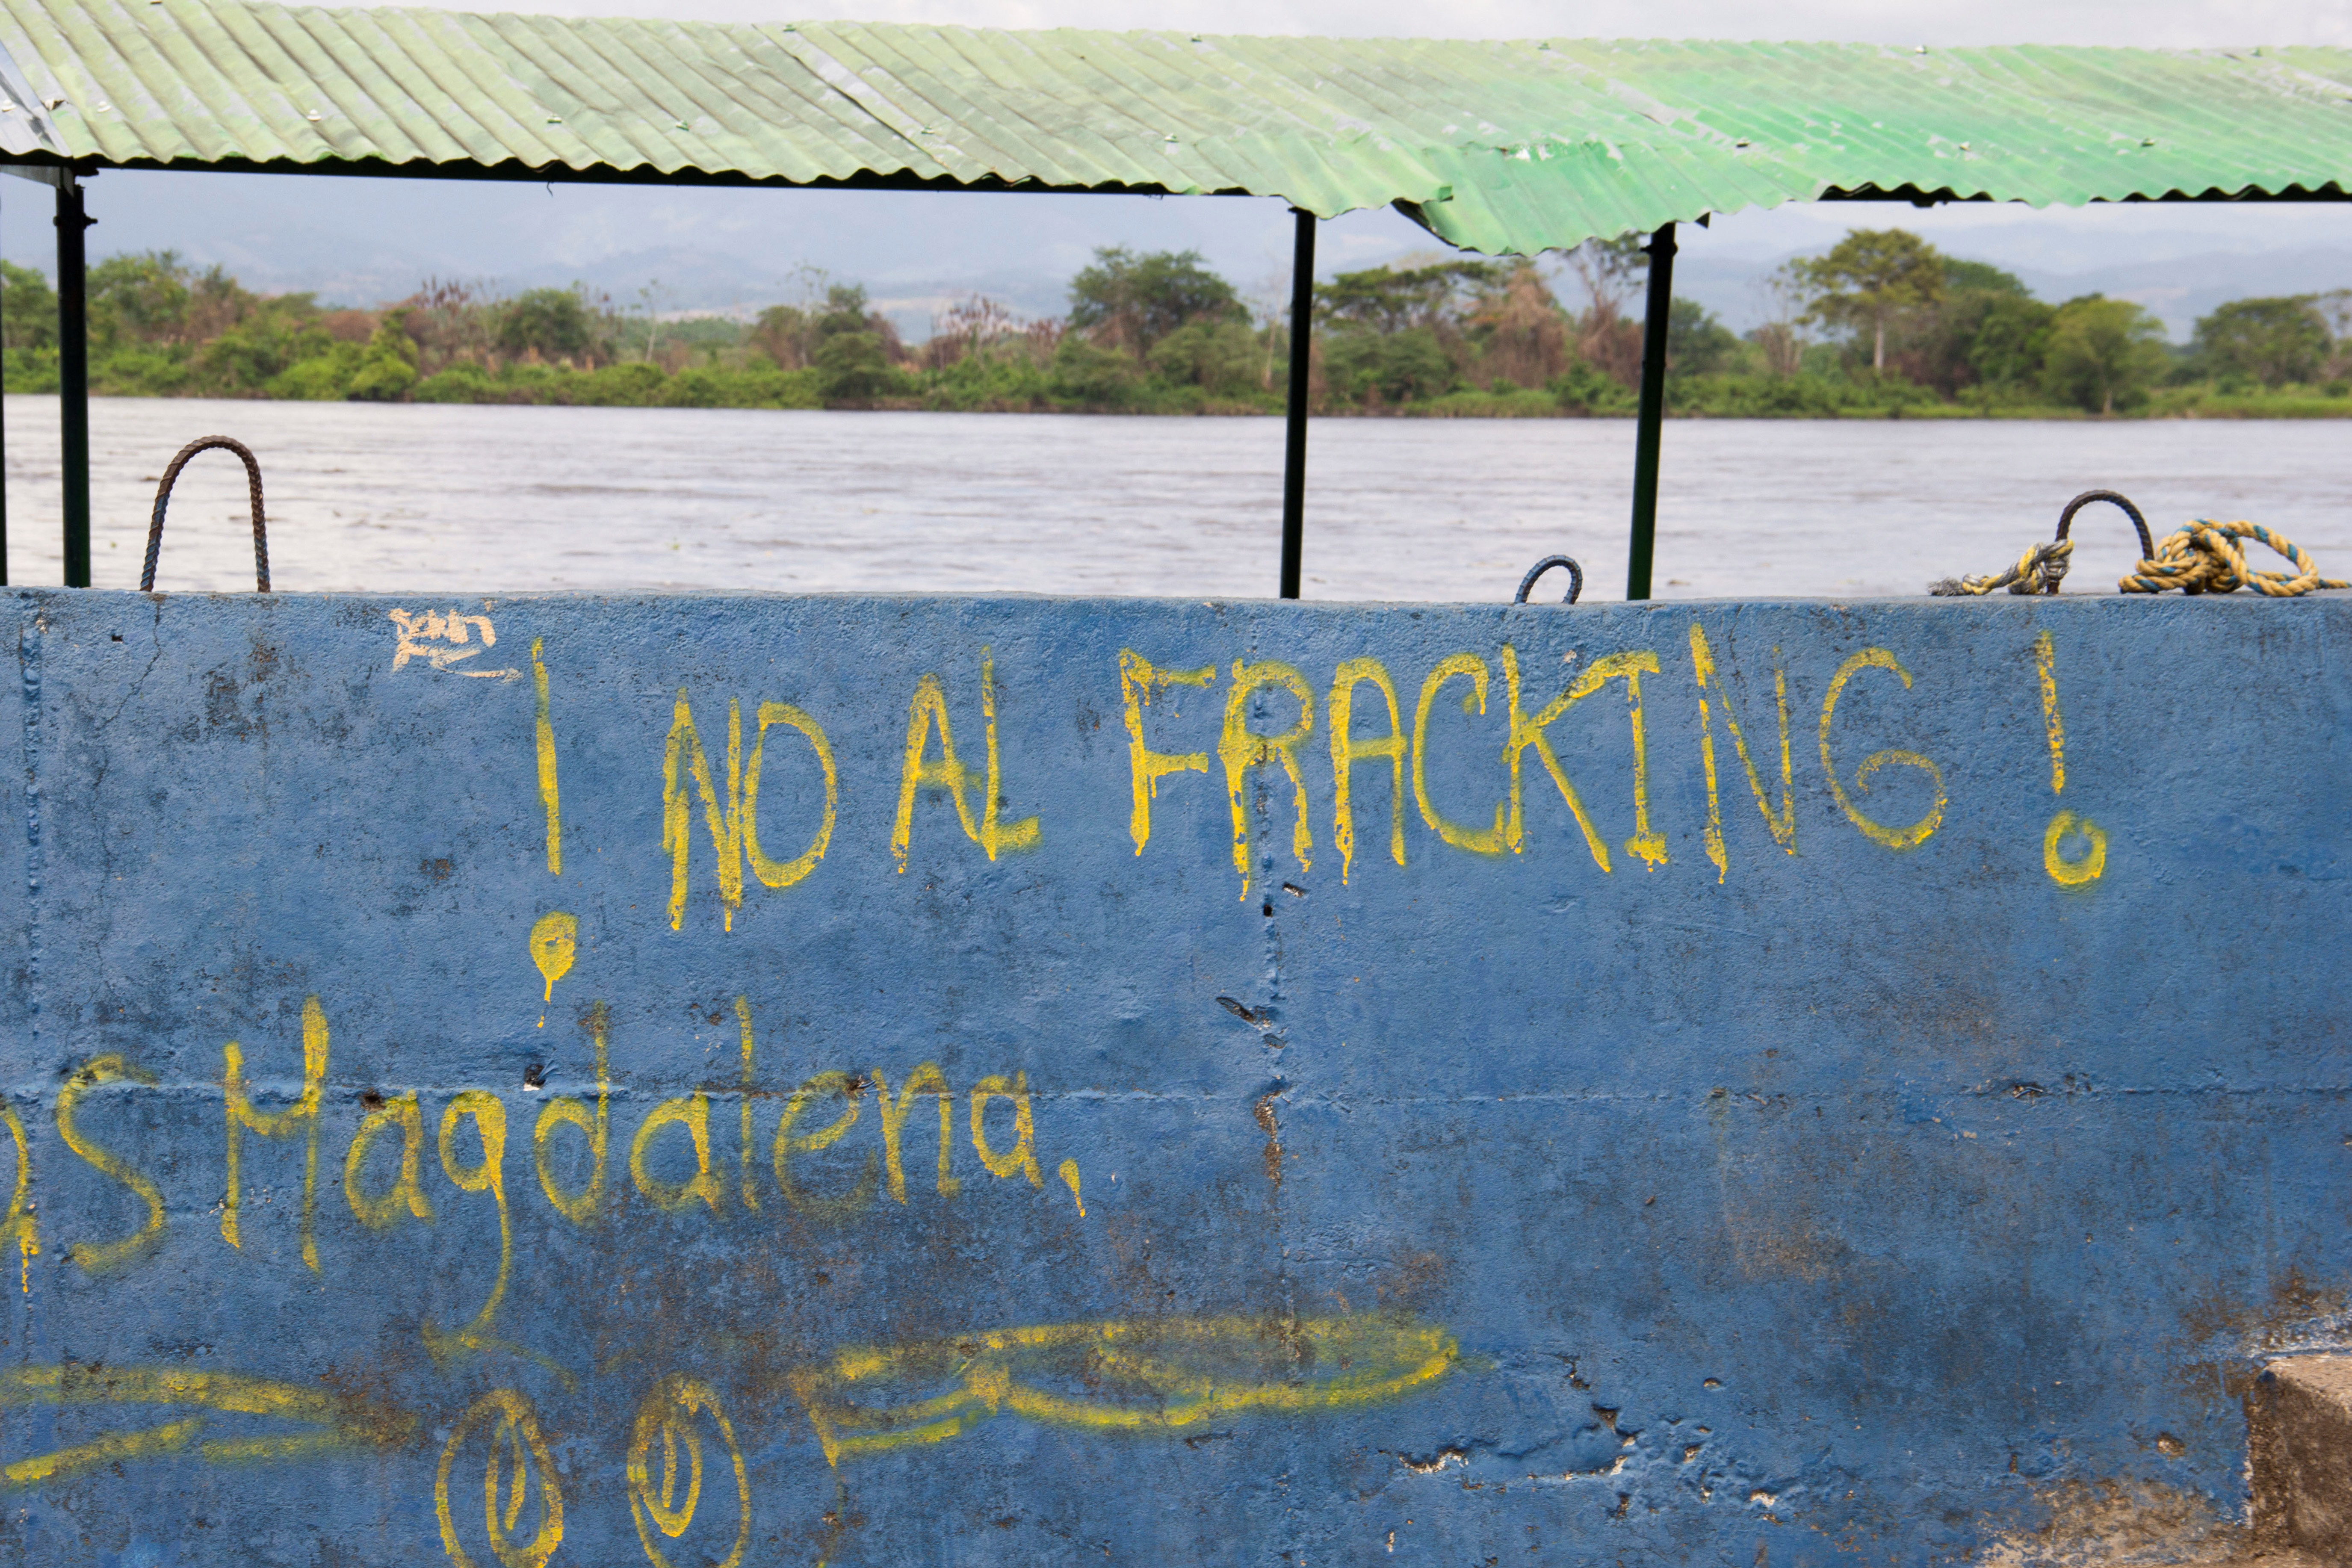 Un grafiti que dice "No al fracking" se ve en una pared cerca del río Magdalena en Puerto Wilches